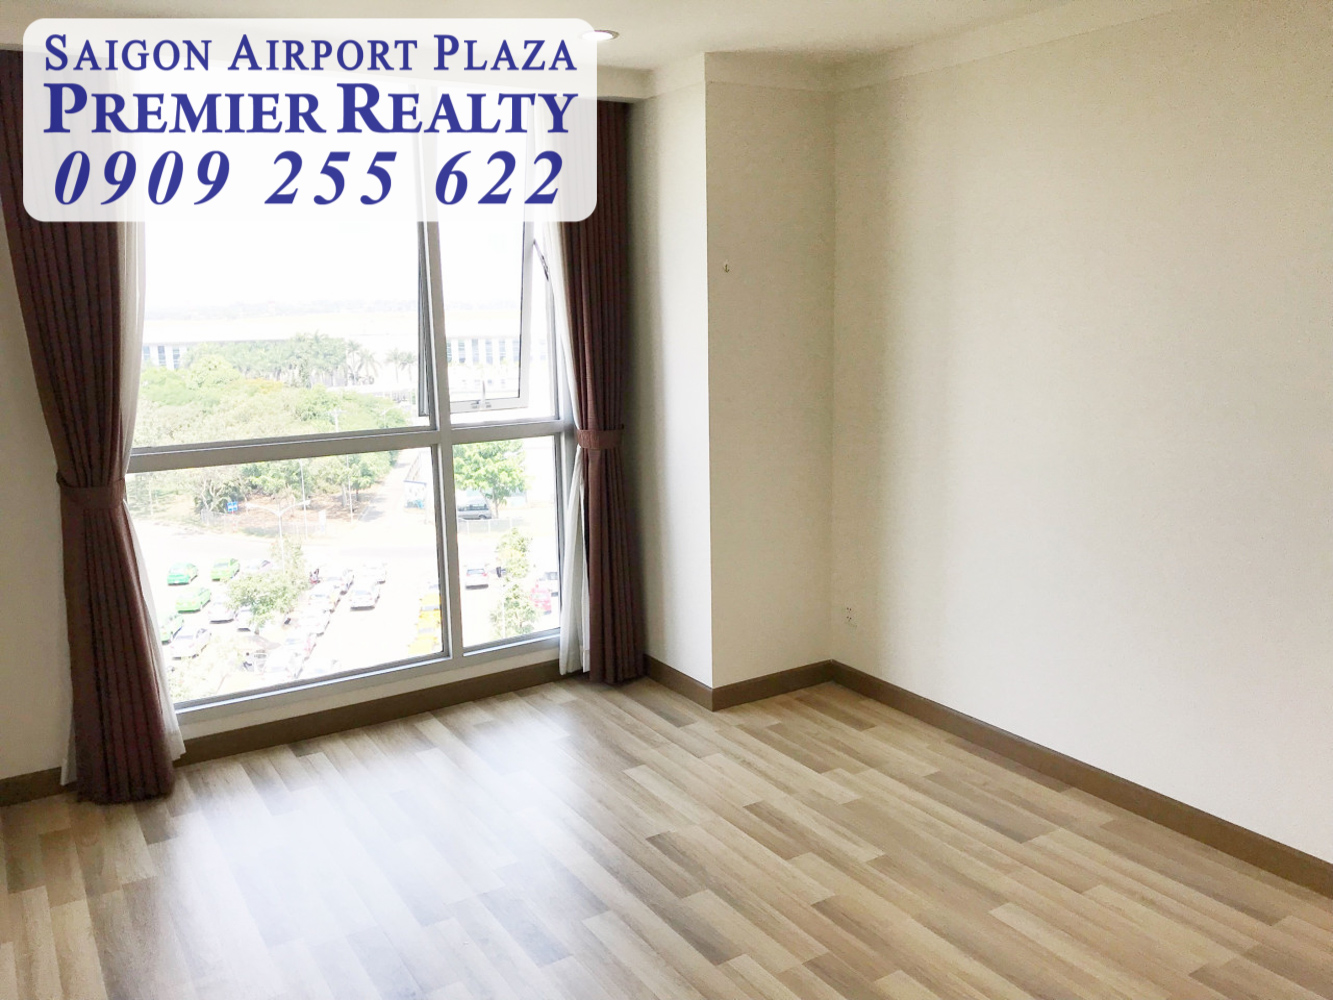 Quản lý tất cả giỏ hàng cho thuê căn hộ chung cư 1-2-3PN Saigon Airport Plaza. Hotline PKD 0909 255 622